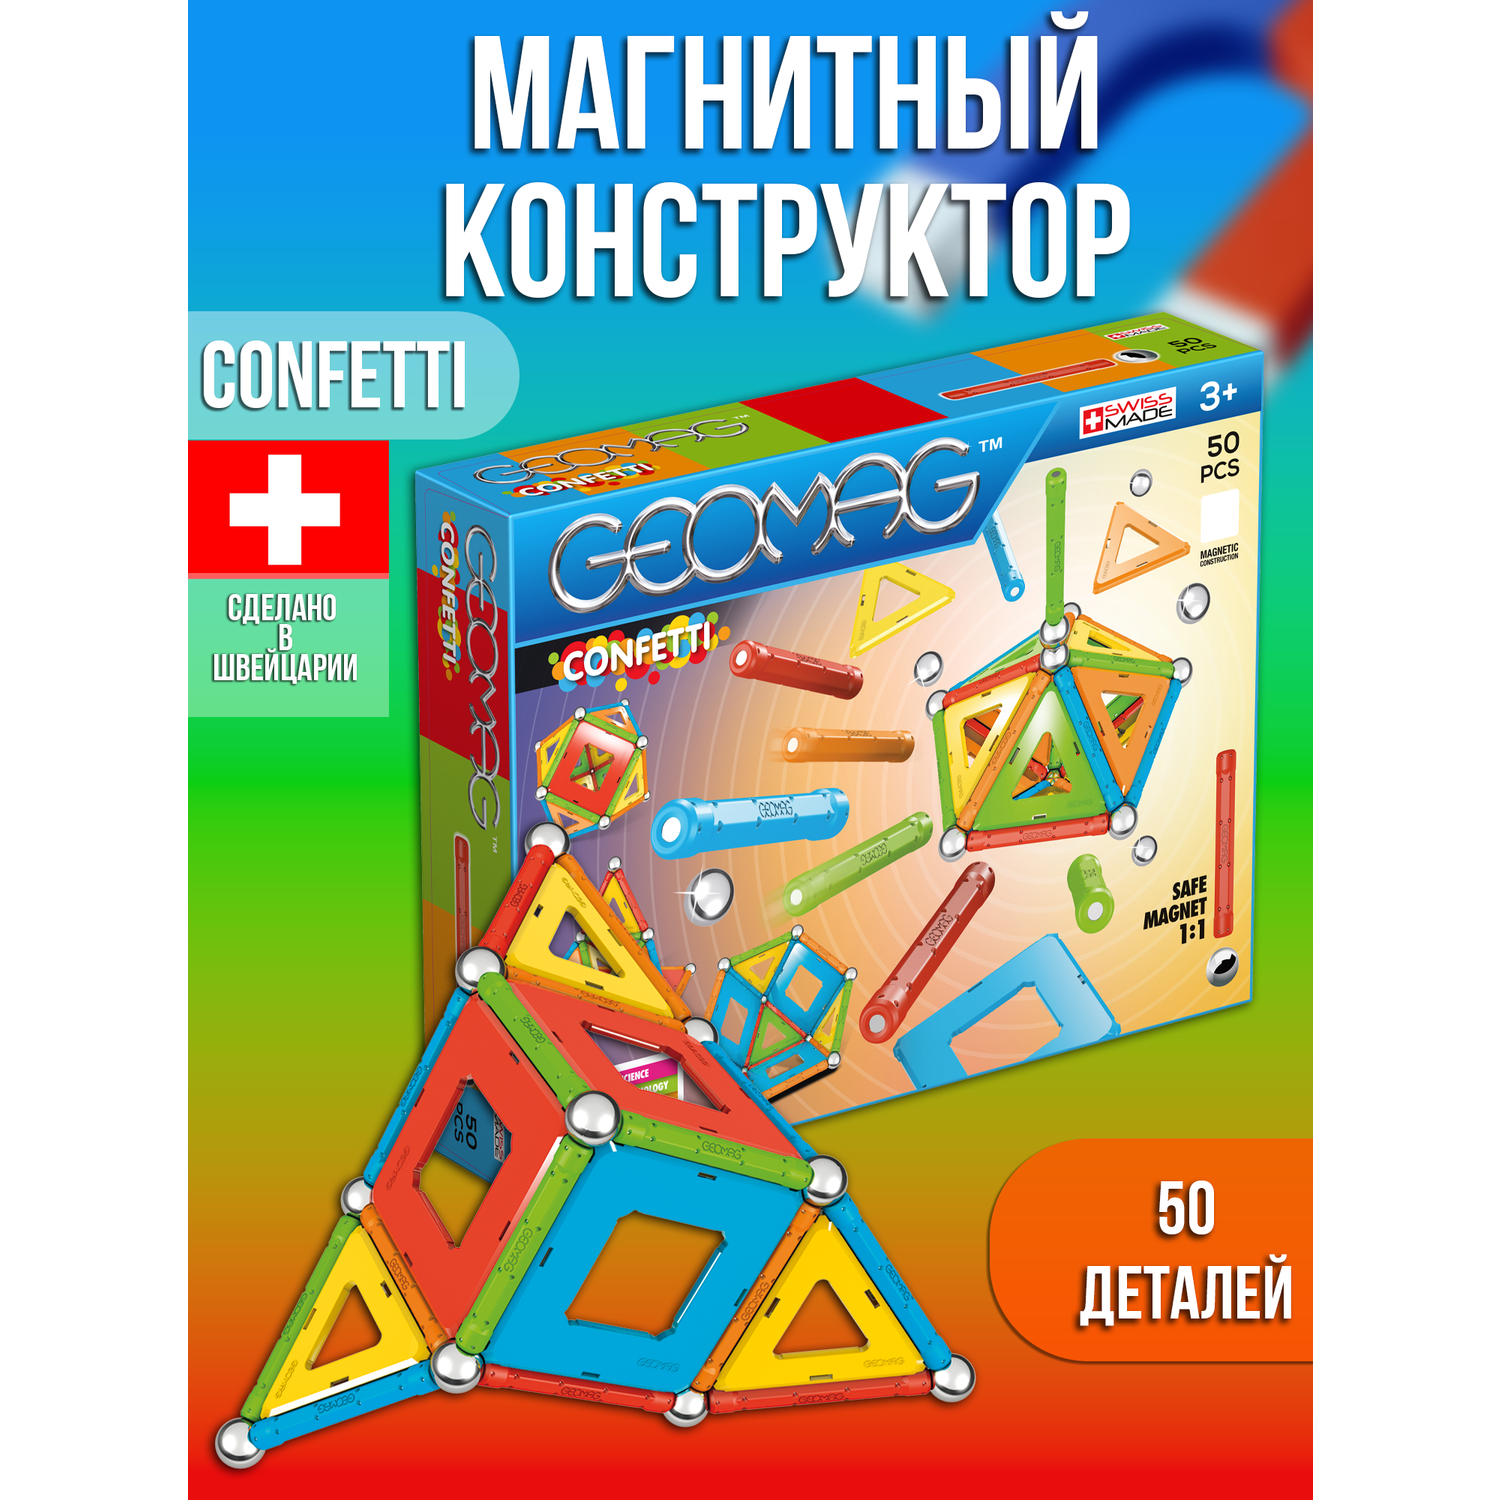 Конструктор магнитный GEOMAG Confetti 50 деталей - фото 7